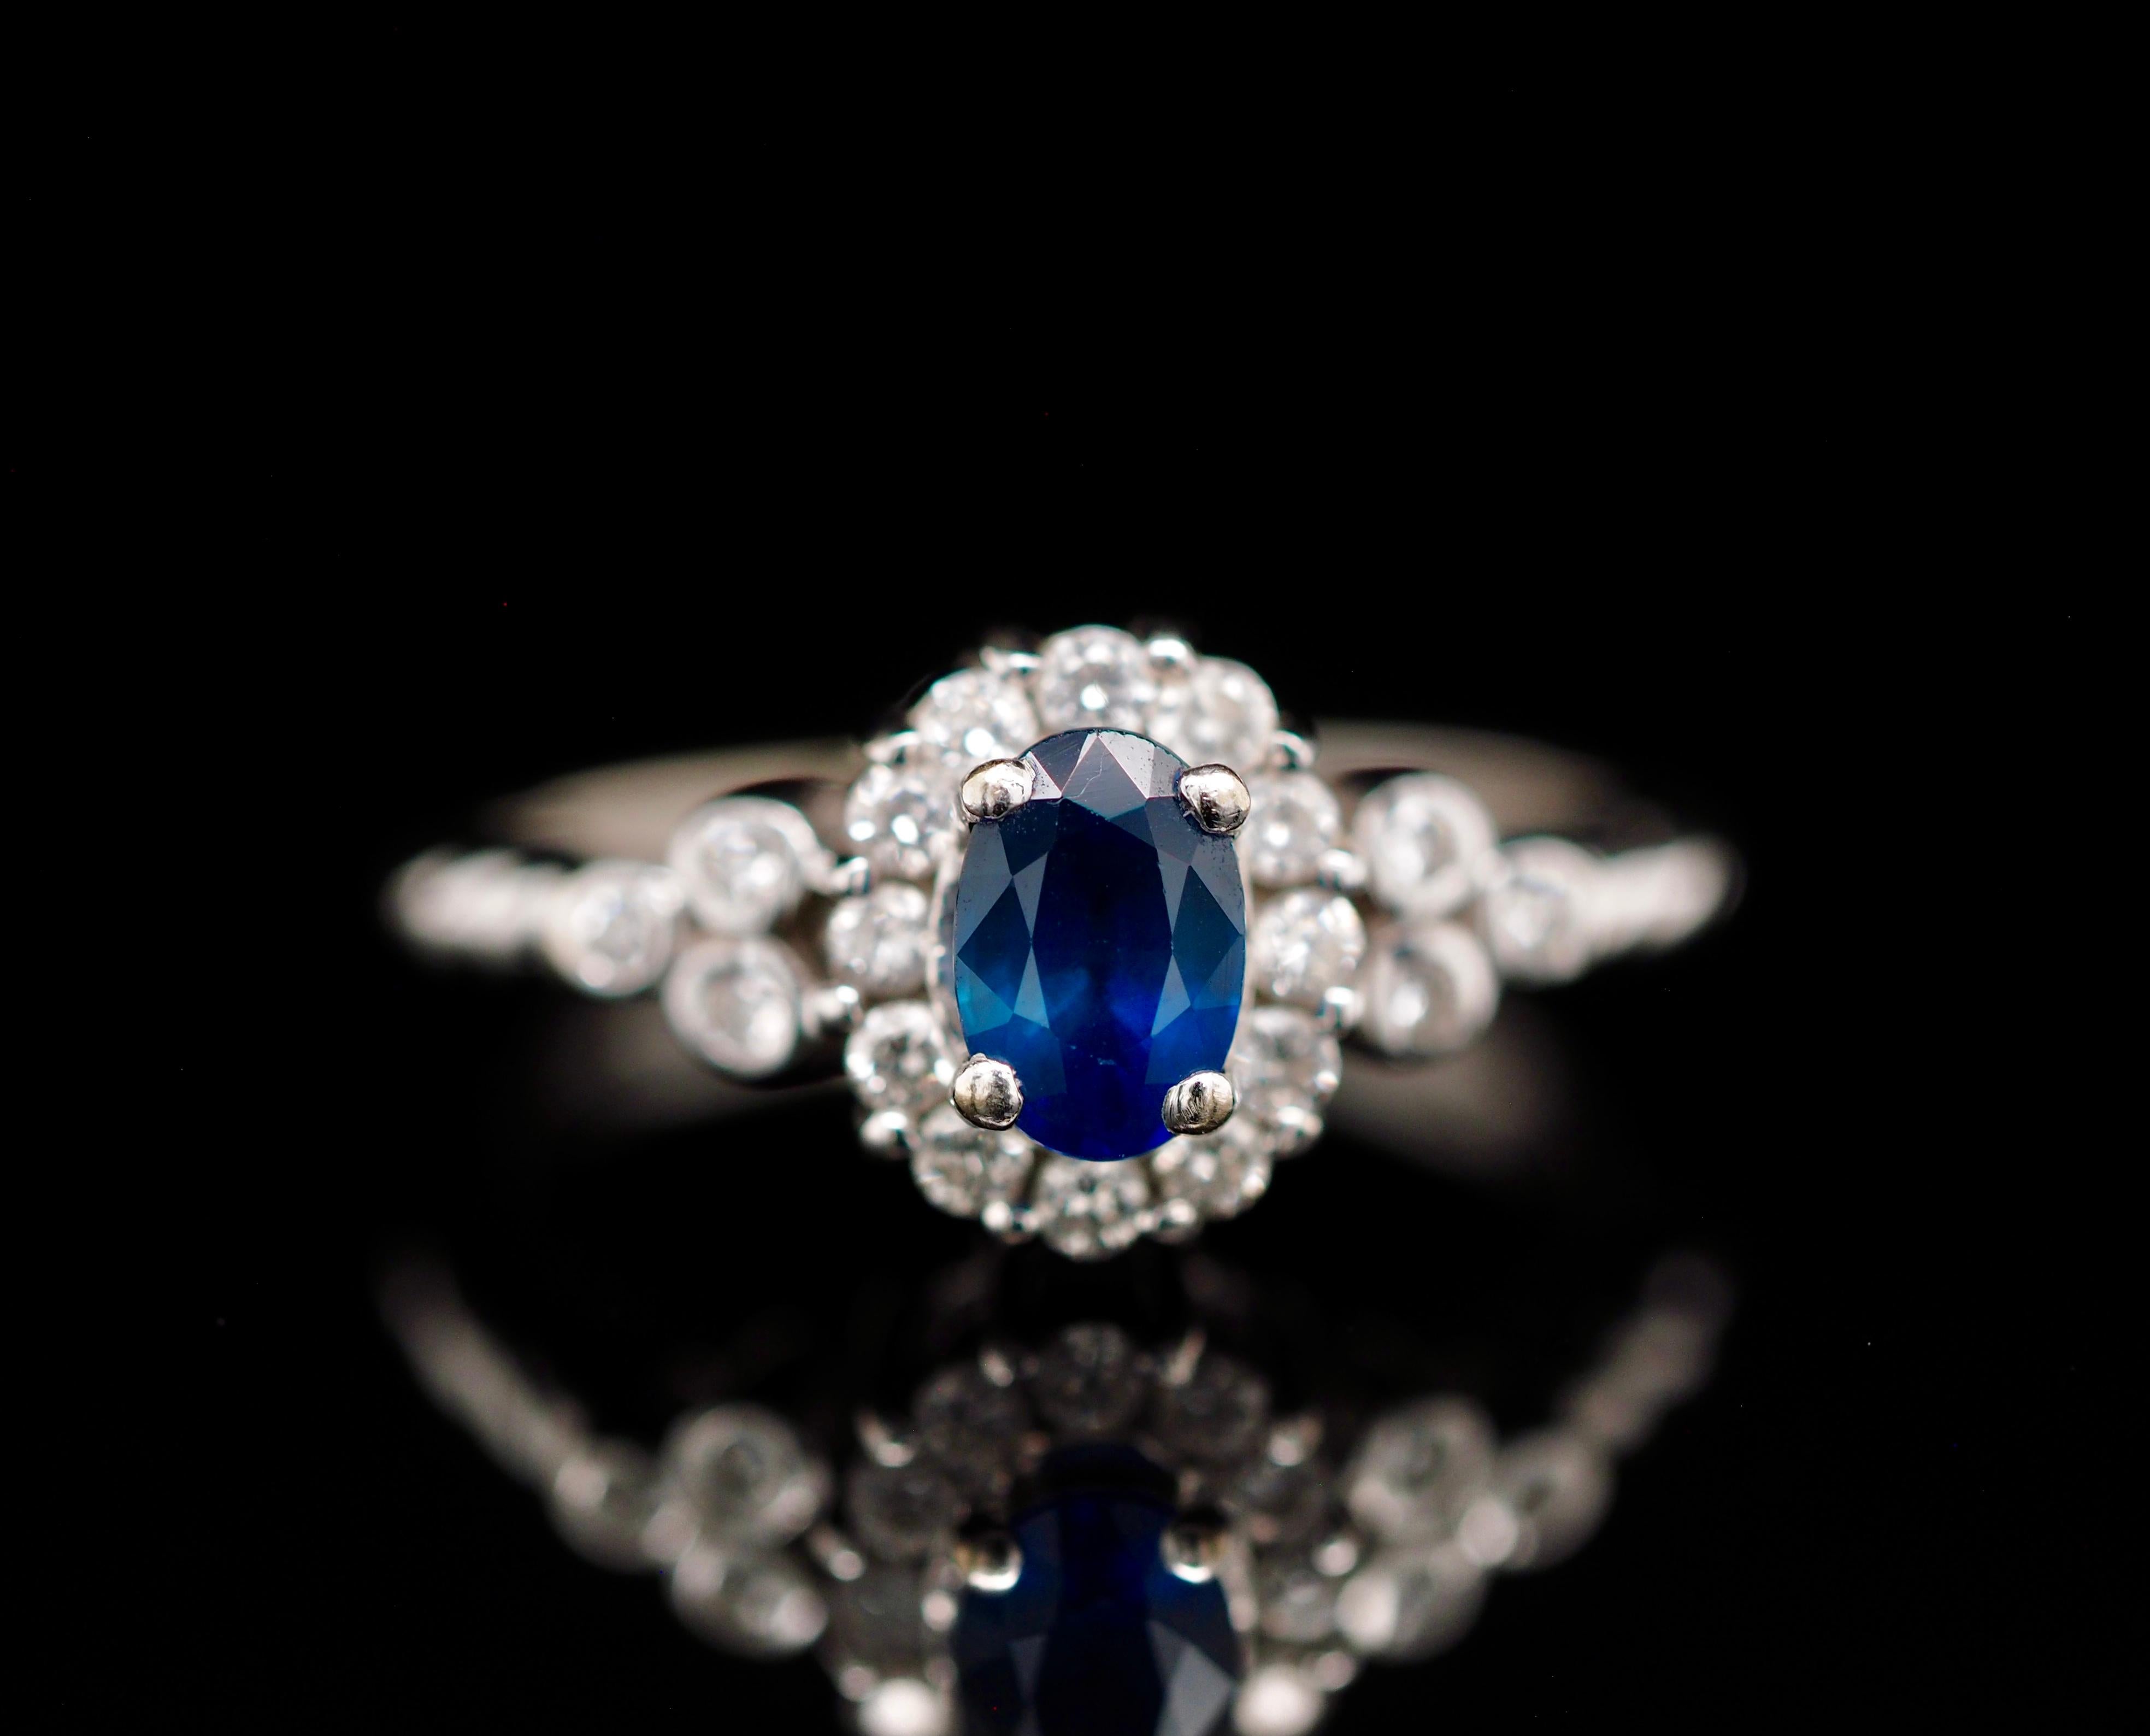 Ein wunderschöner Ring von Le Vian im zeitgenössischen Stil. Er ist der perfekte Verlobungsring oder ein exquisiter Modering. Der natürliche Blaubeersaphir in der Mitte wird von einem brillanten Diamantenhalo und einem Trio von Diamanten in